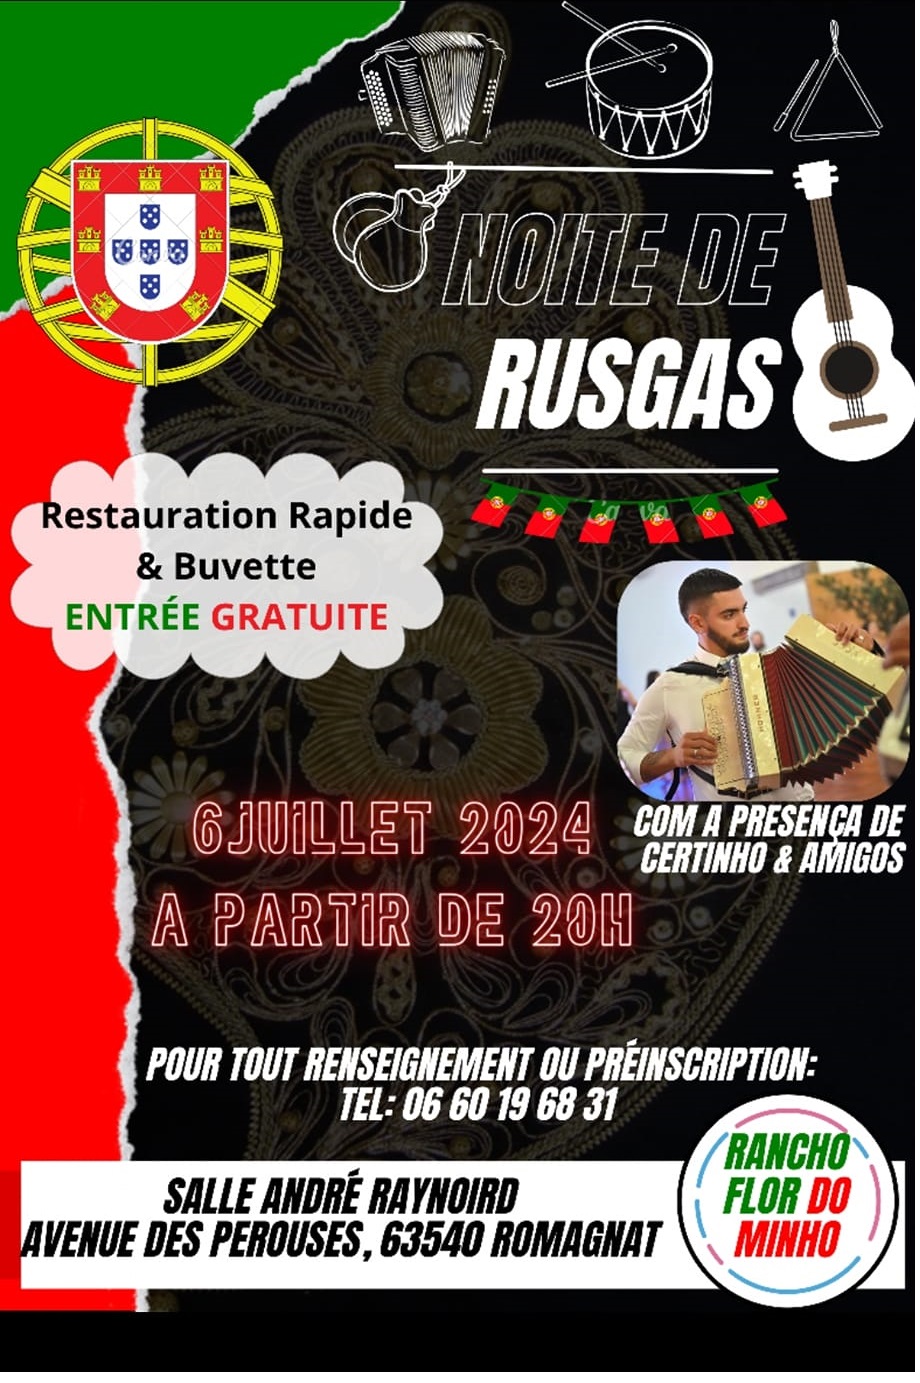 Noite de Rusgas com Certinho e amigos,  Org. Rancho Flor do Minho - 06/07/2024 - 20h - Romagnat